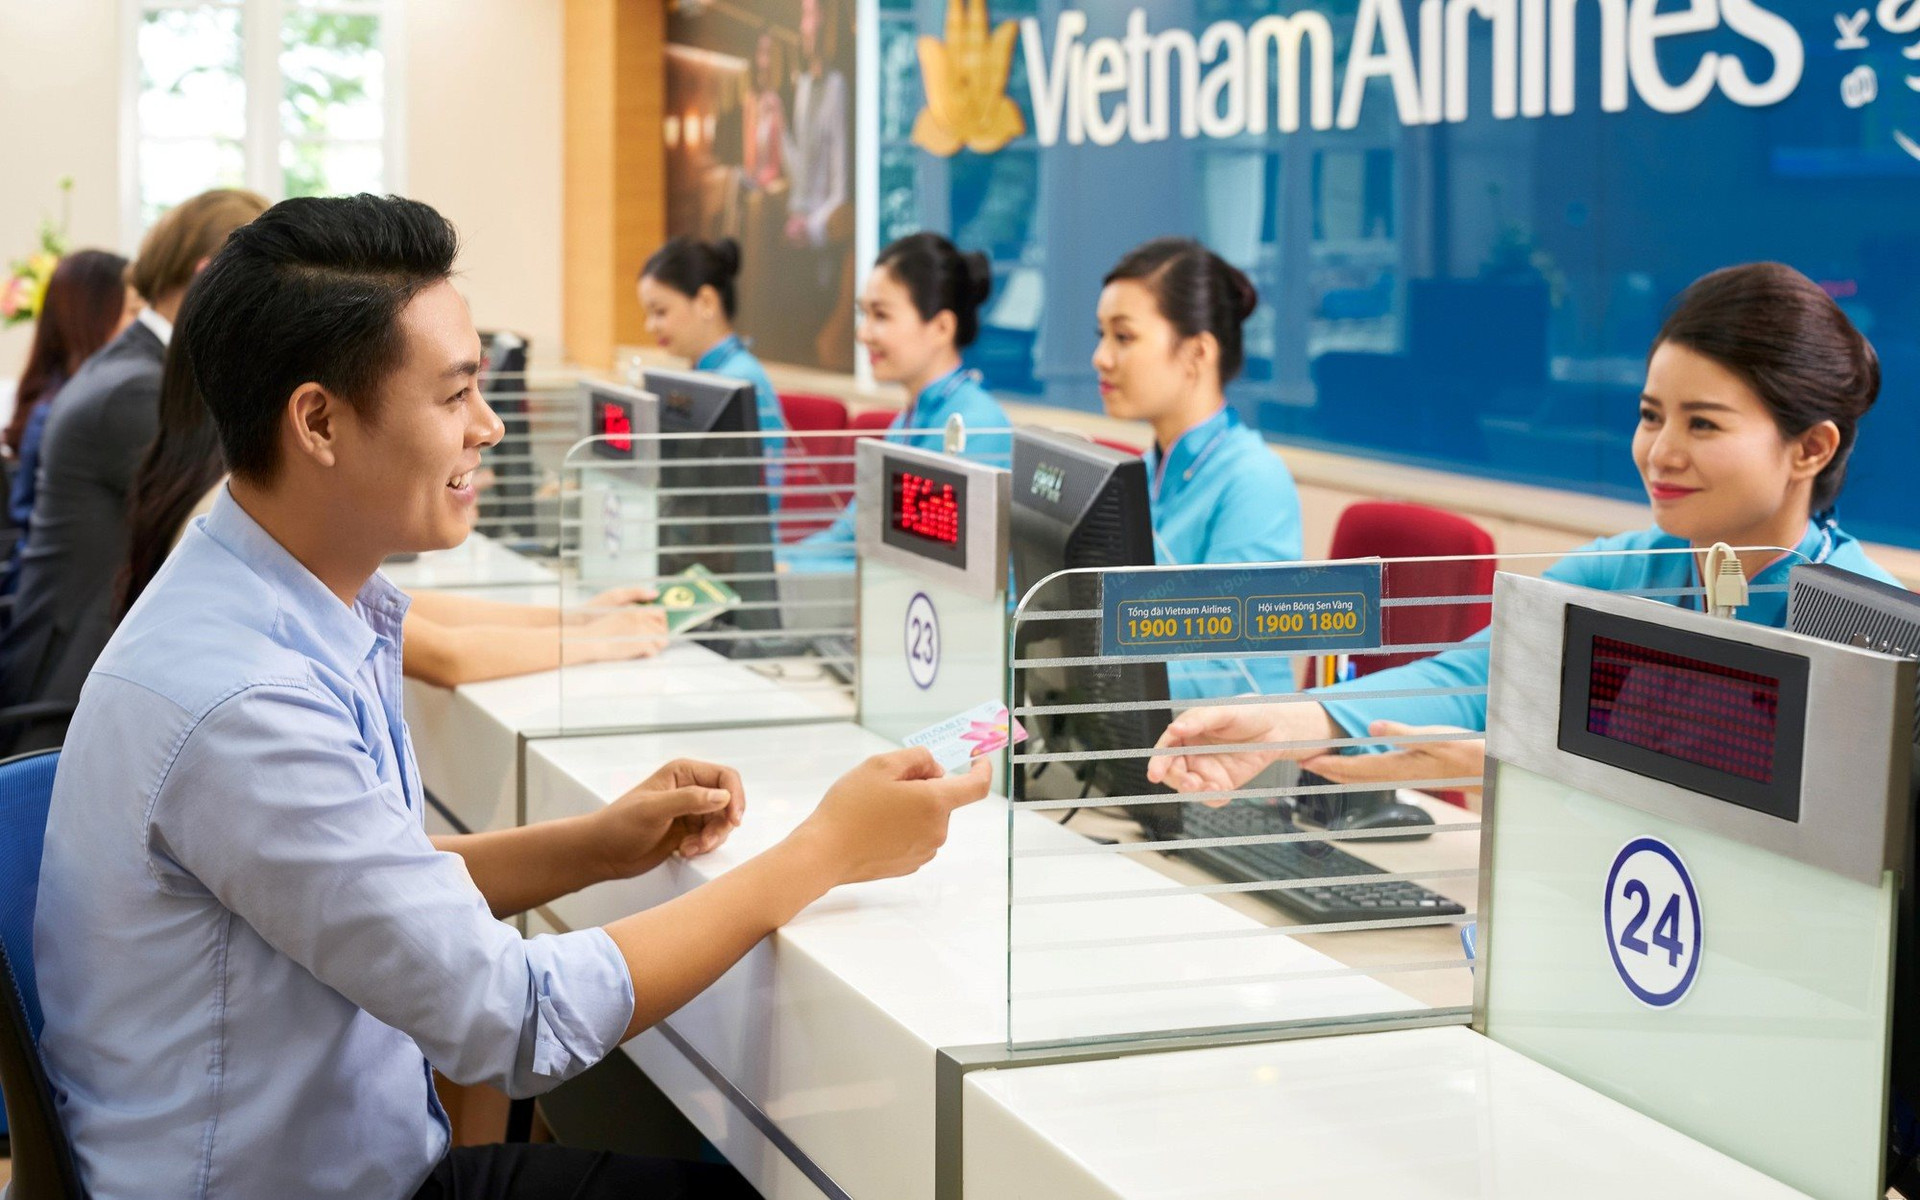 Vietnam Airlines tung giá vé hấp dẫn cho các chuyến bay sáng sớm, tối muộn